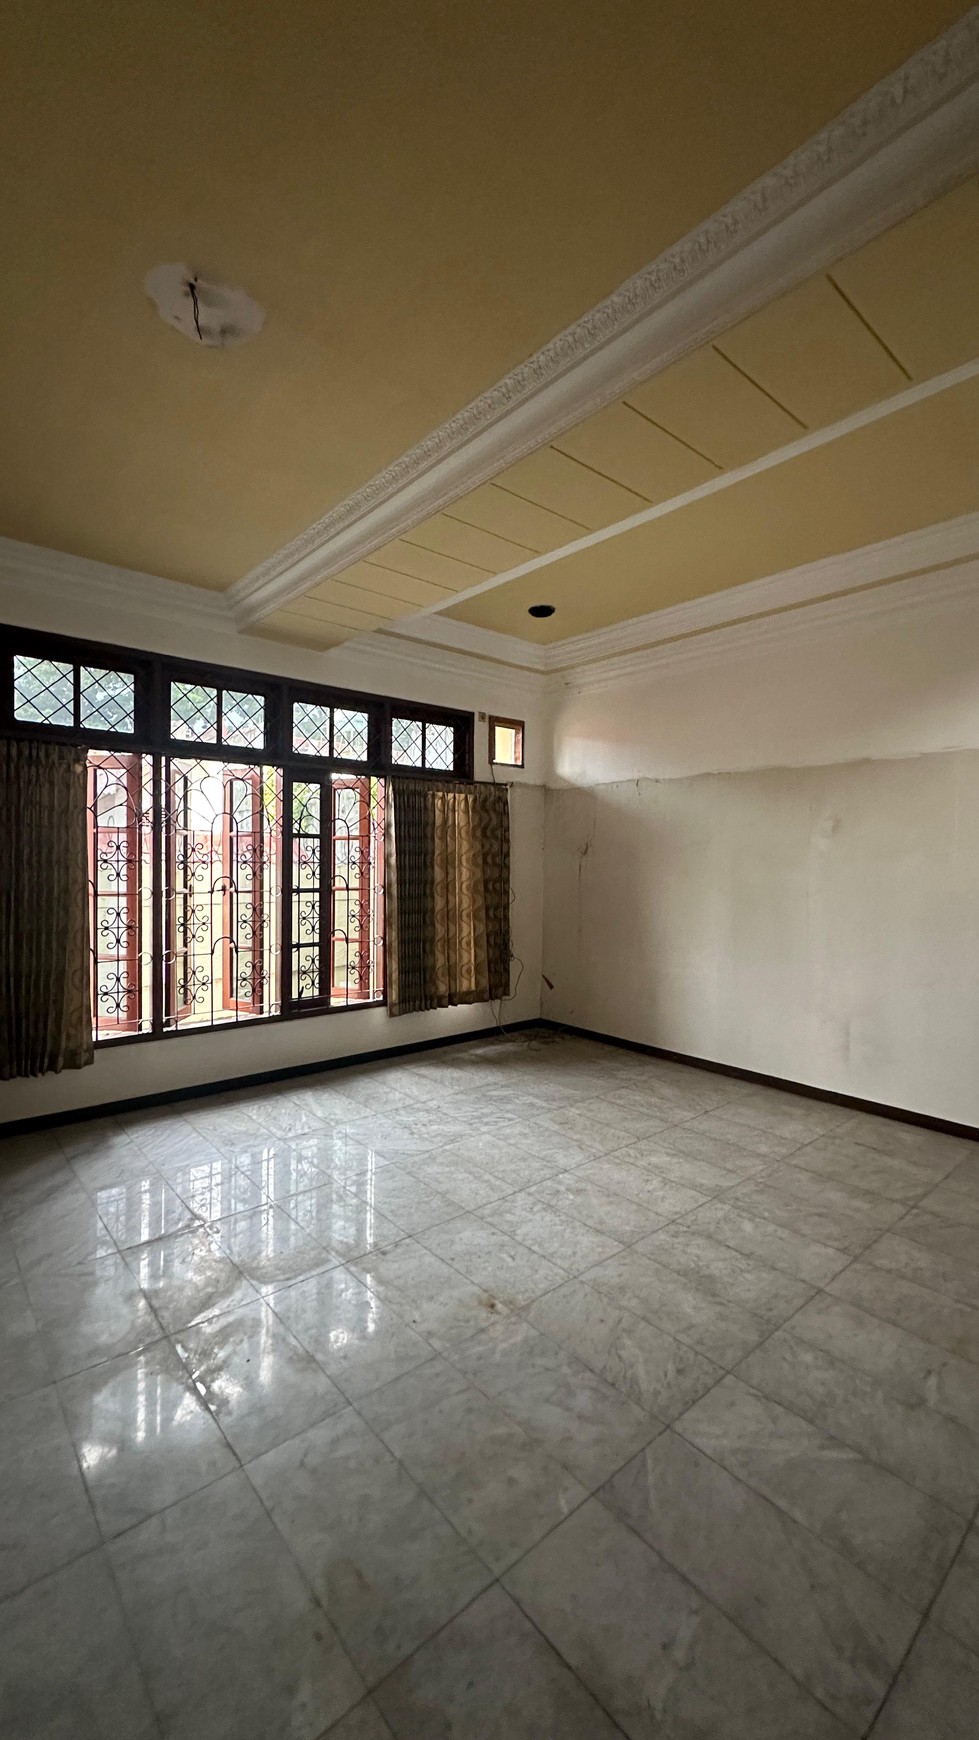 Rumah Bagus Di Jl Panglima Polim kebayoran Baru Jakarta Selatan